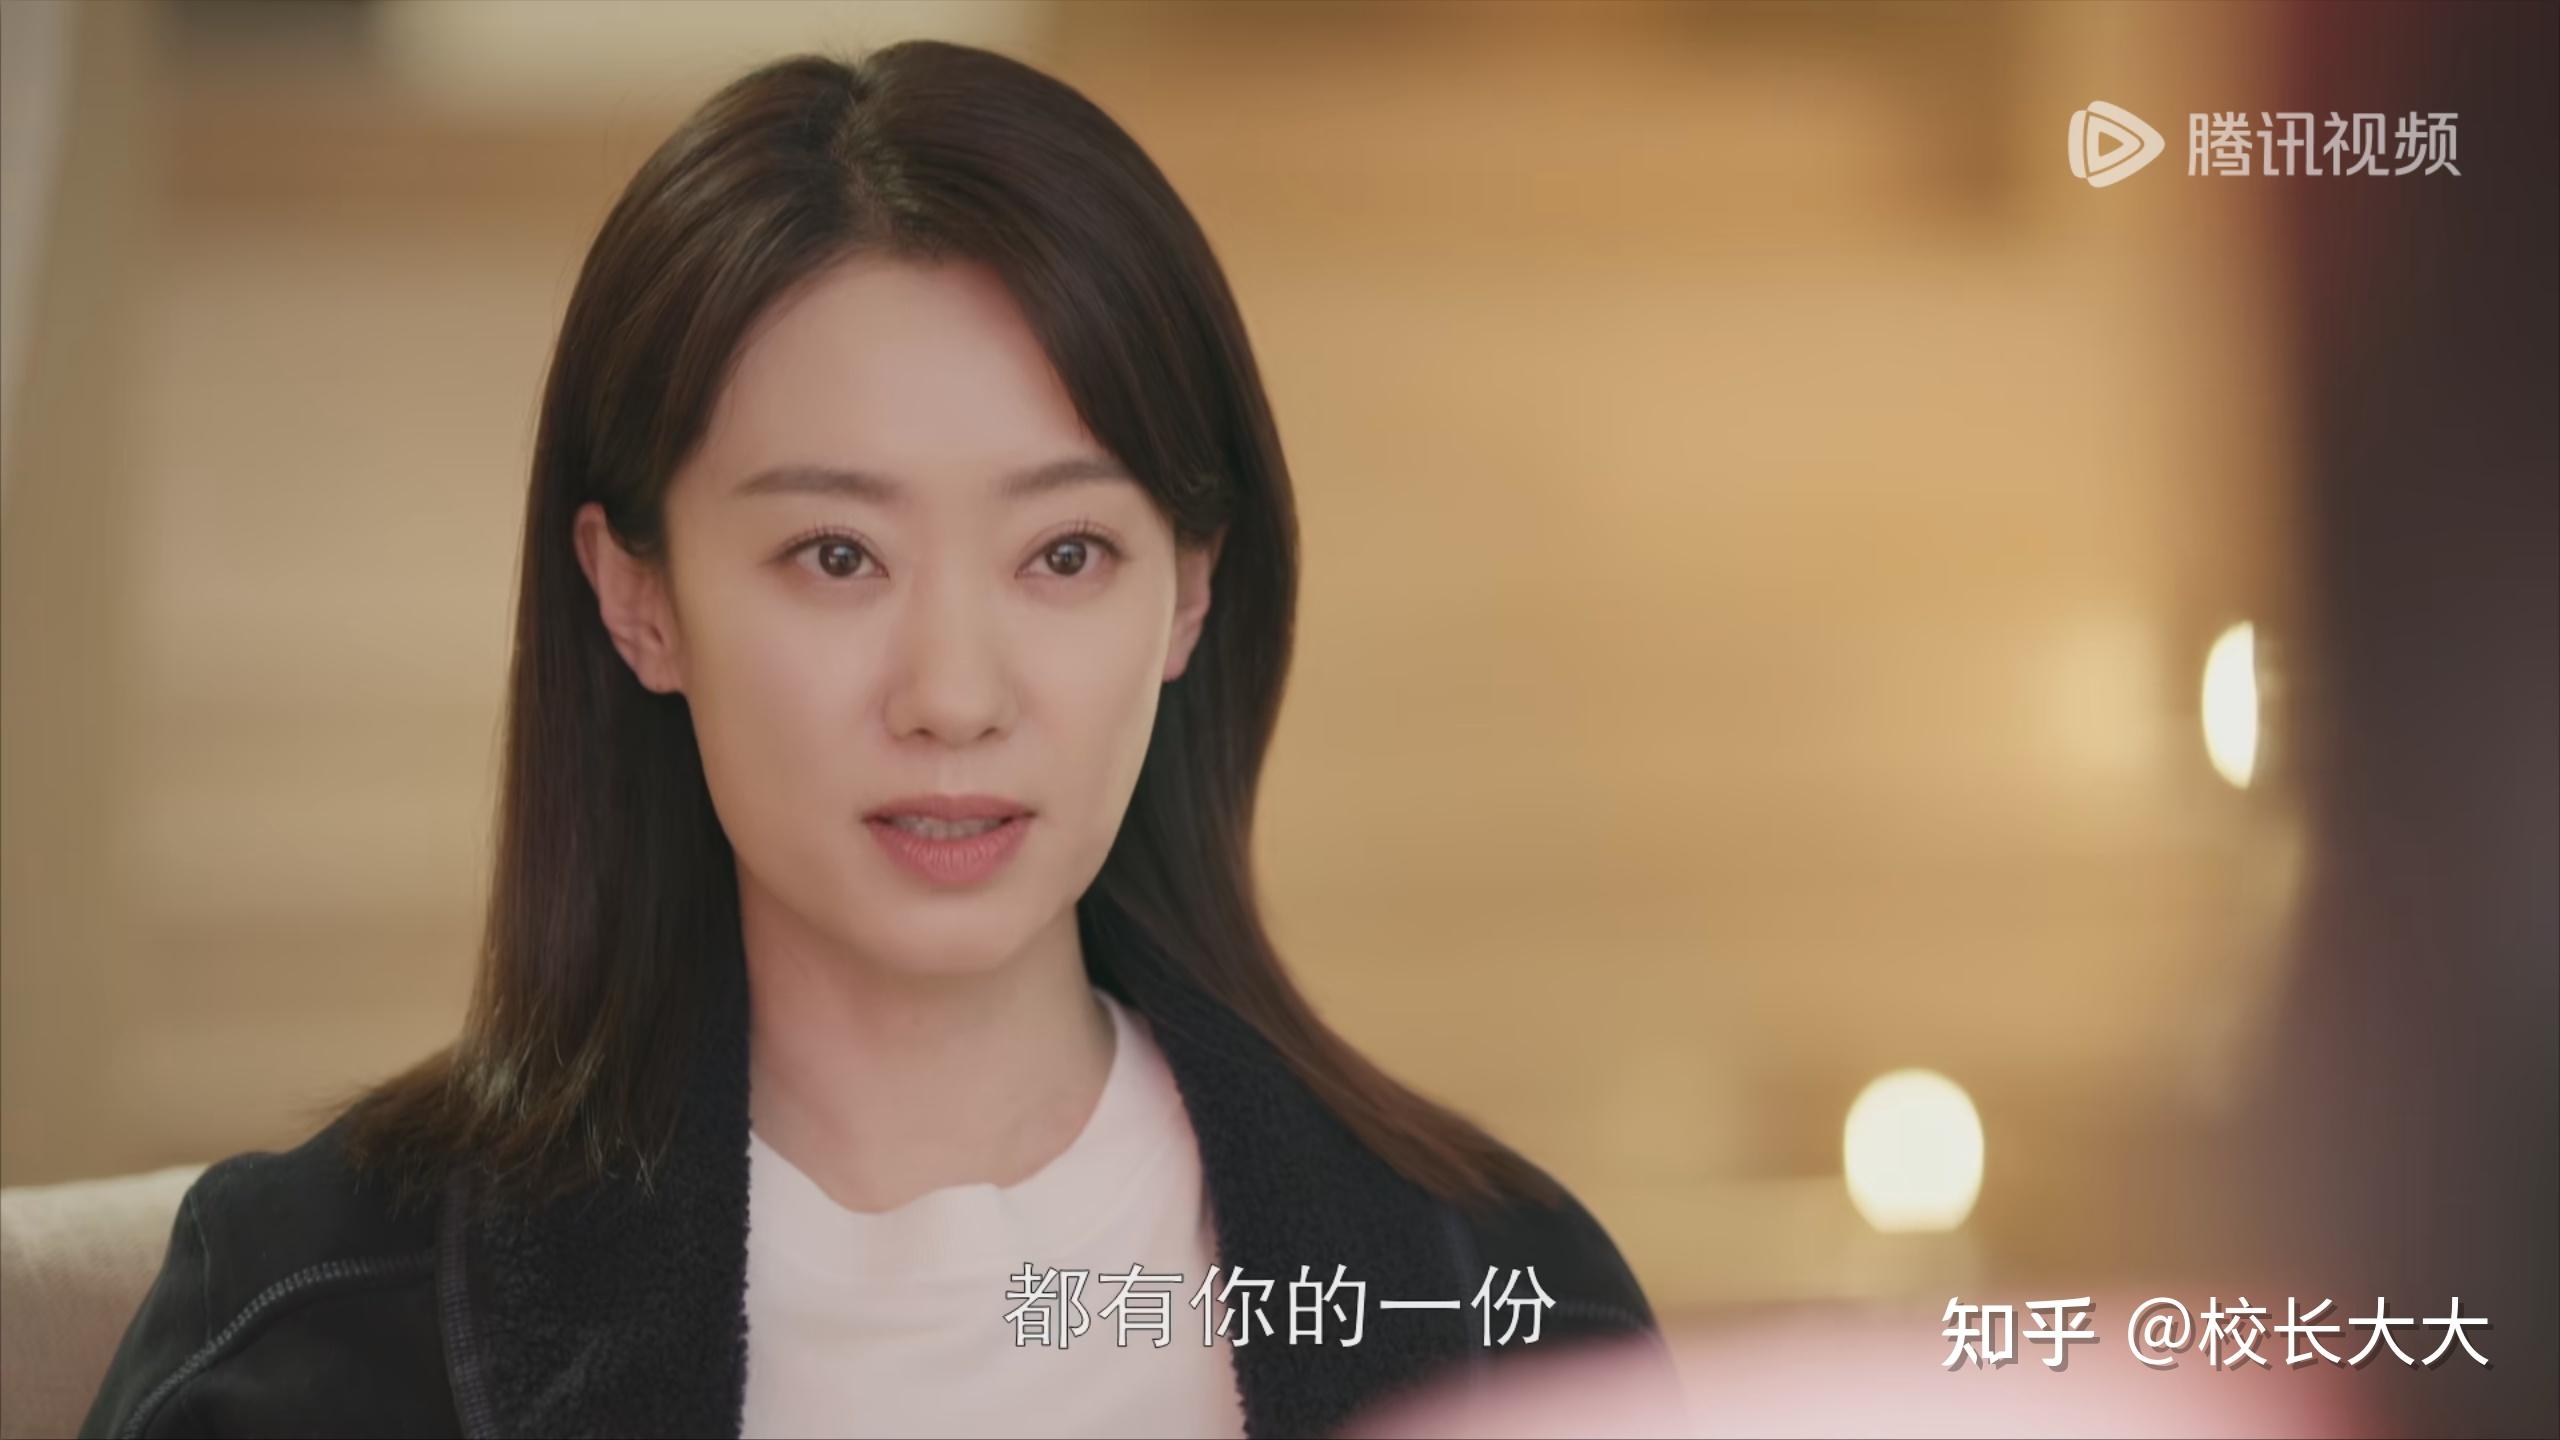 如何评价由黄晓明,张小斐,张嘉倪主演的电视剧《好事成双》? 